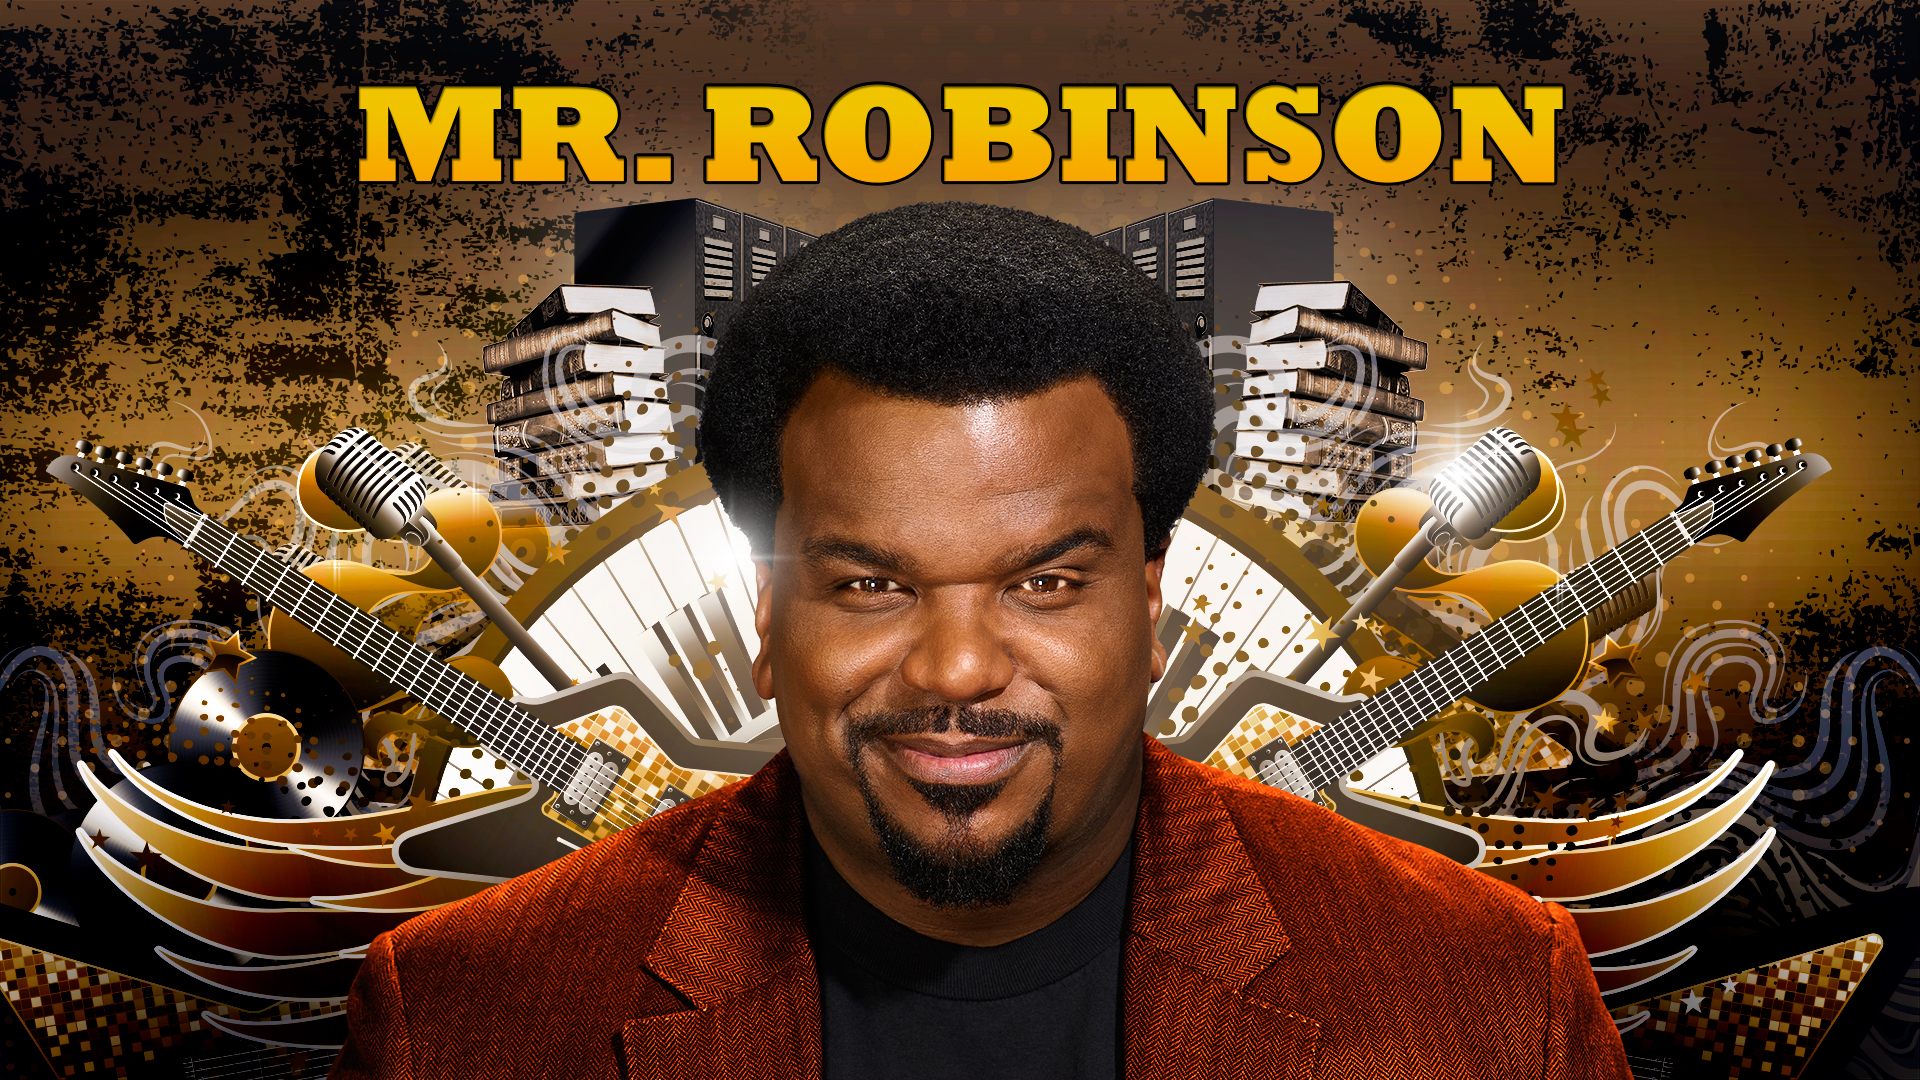 Mr robinson. Мистер Робинсон. “Mr. Robinson” “Friday”. Kenny Robinson (comedian). FNF Mr Robinson.